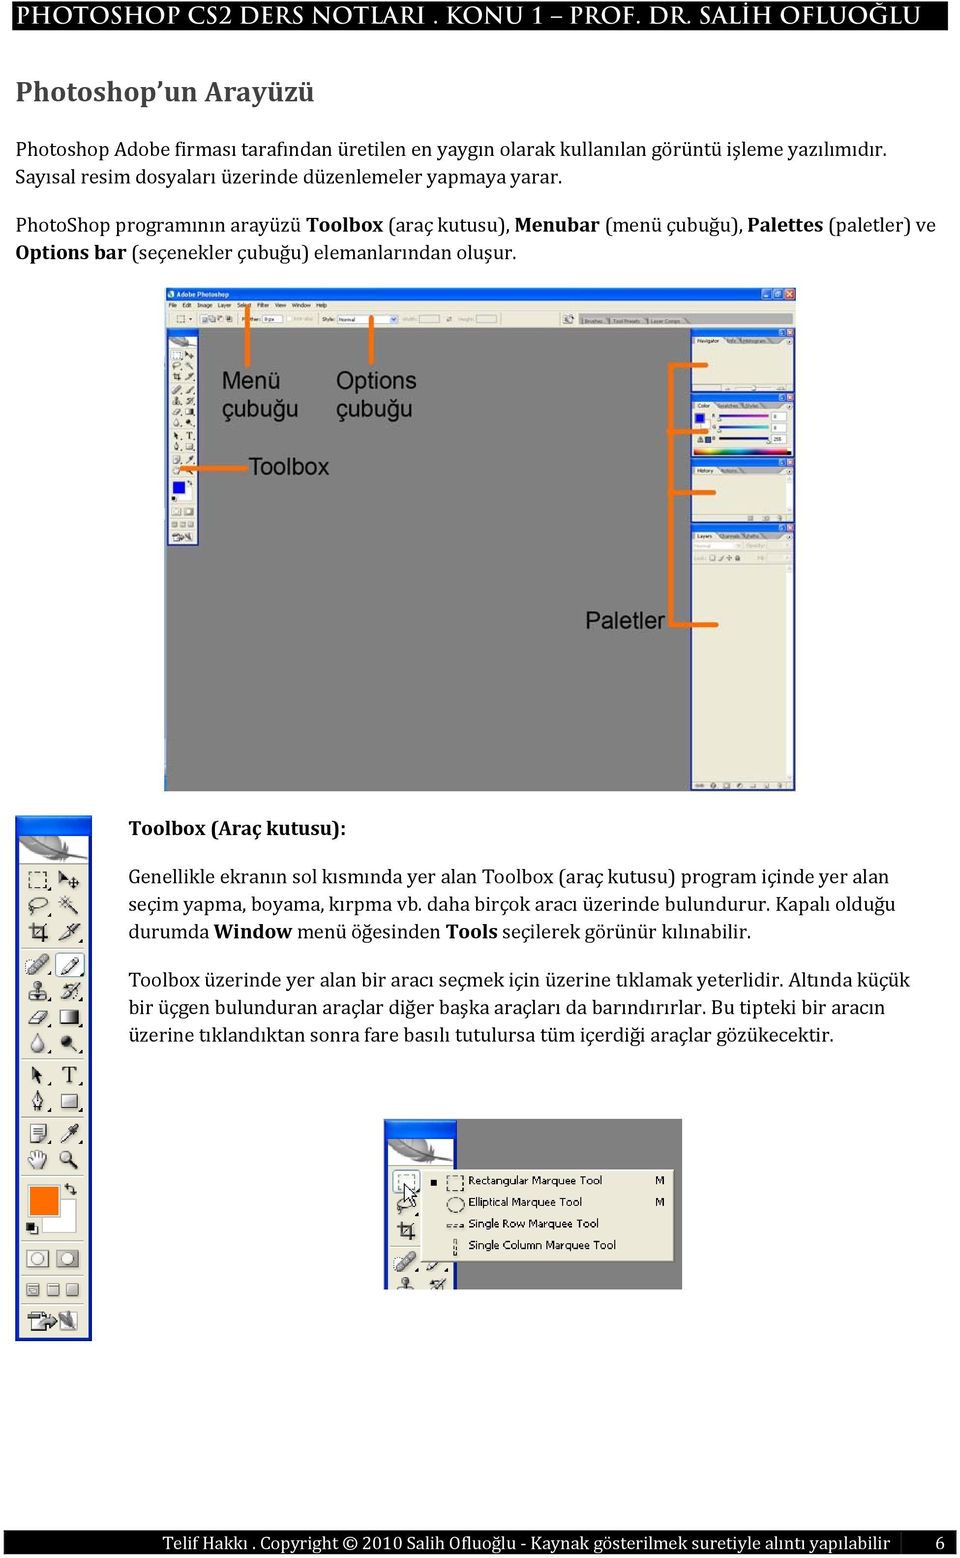 Toolbox (Araç kutusu): Genellikle ekranın sol kısmında yer alan Toolbox (araç kutusu) program içinde yer alan seçim yapma, boyama, kırpma vb. daha birçok aracı üzerinde bulundurur.